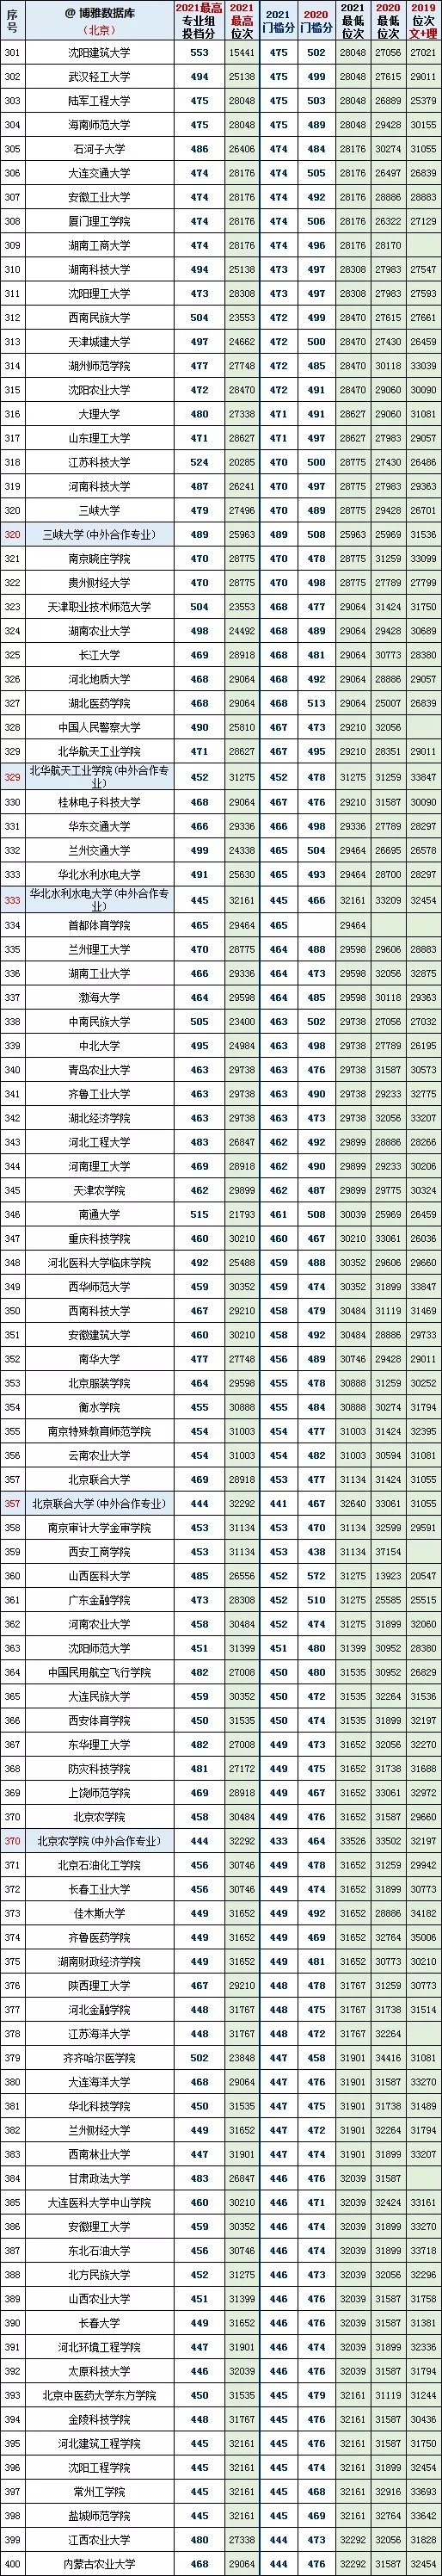 北京本科批最低投档线2020年~2021年对比(图5)